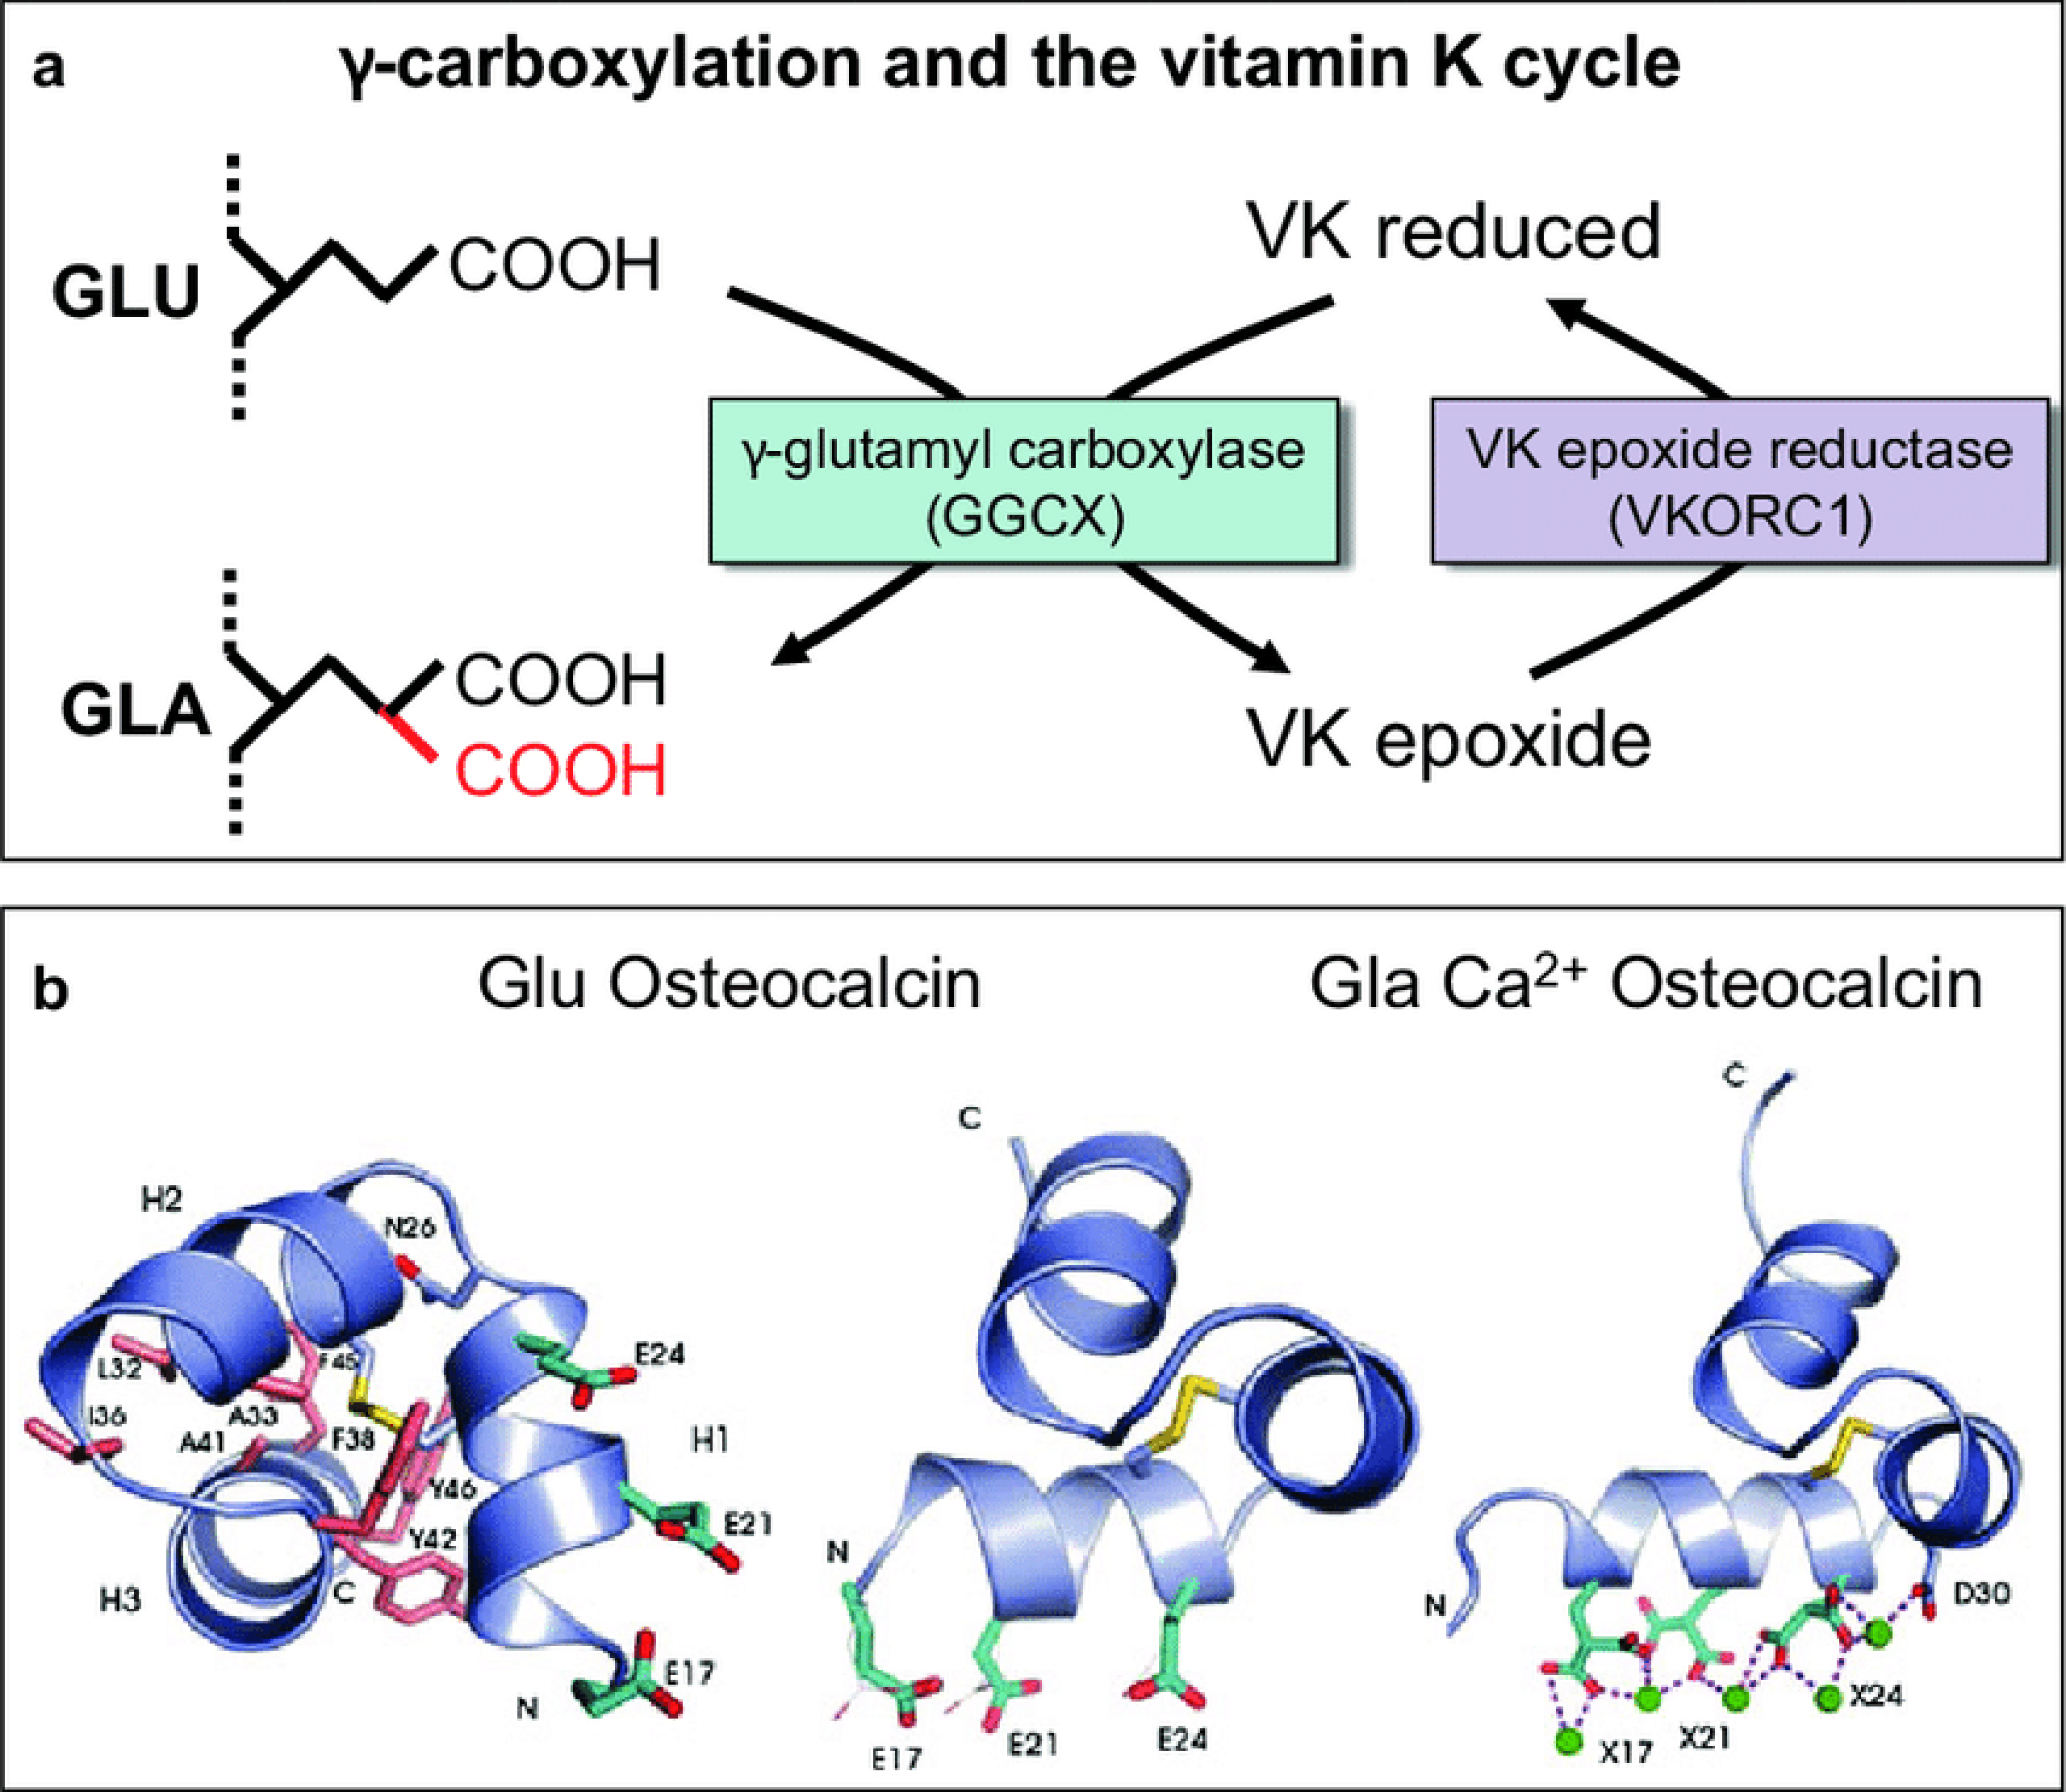 La vitamine K est nécessaire à la réaction de carboxylation qui active l'ostéocalcine